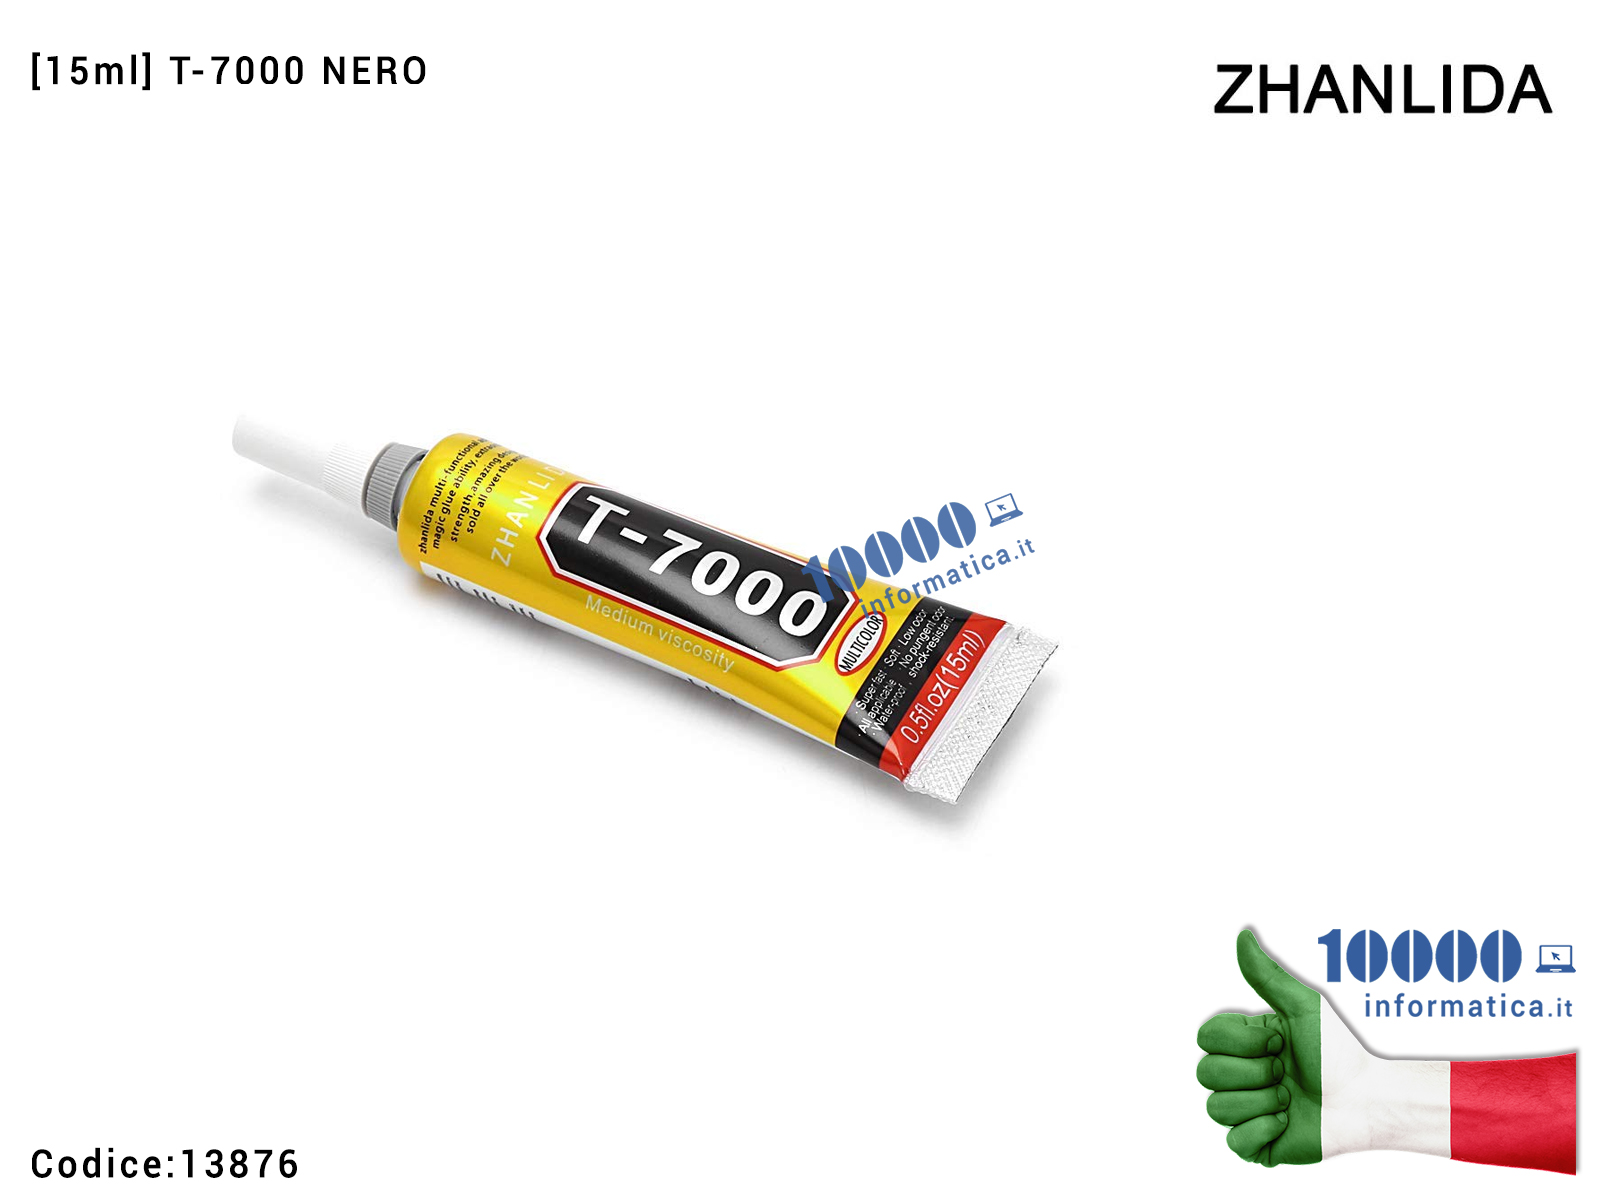 13876 Colla Multiuso ZHANLIDA T-7000 [15ml] Glue T7000 Gel Nero Ade